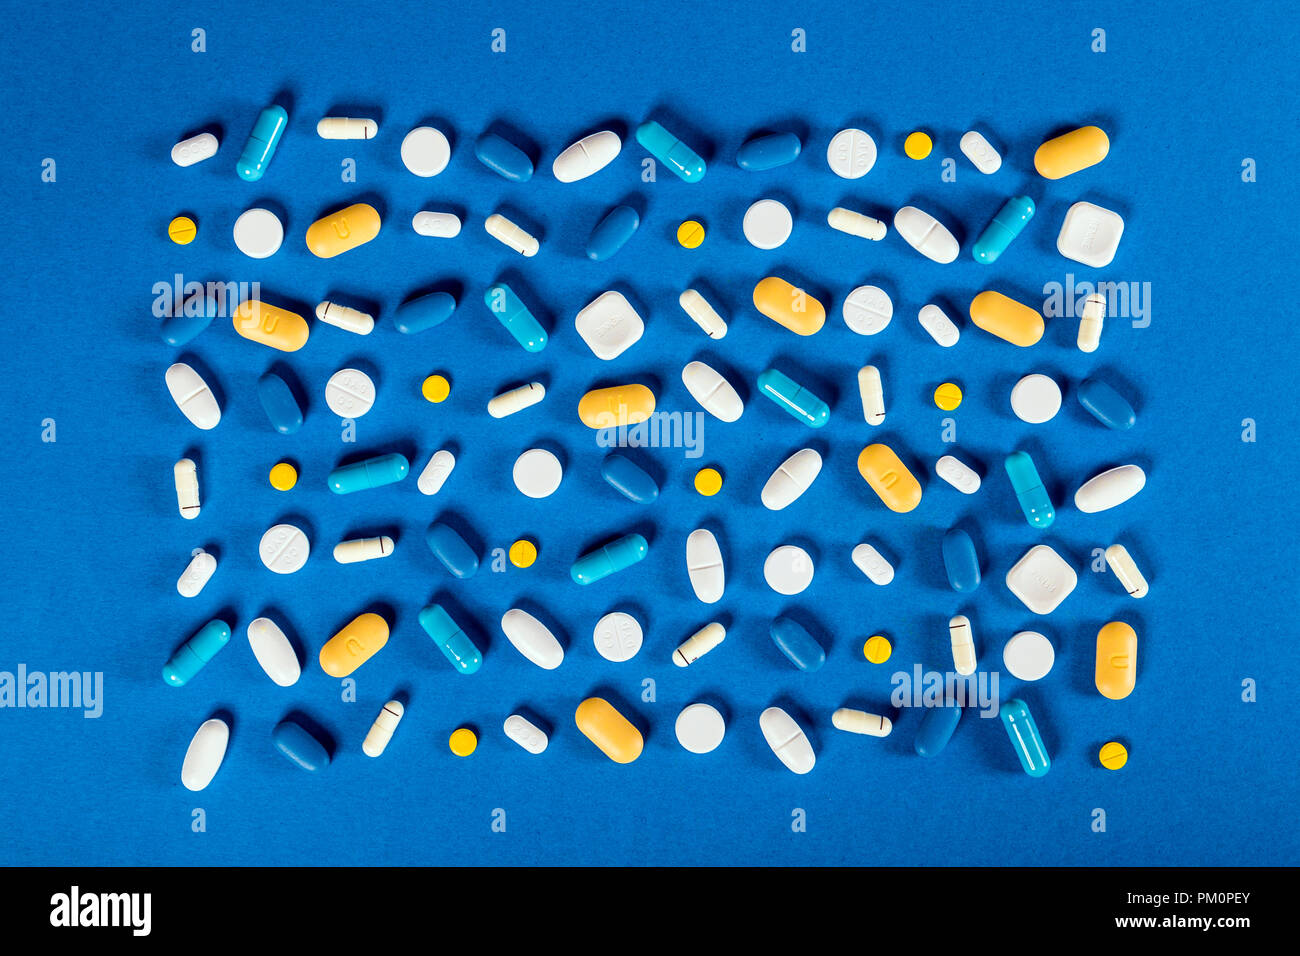 Distribuidos de pastillas, cápsulas y tabletas contra el fondo azul, suplementos, medicamentos, asistencia sanitaria Foto de stock